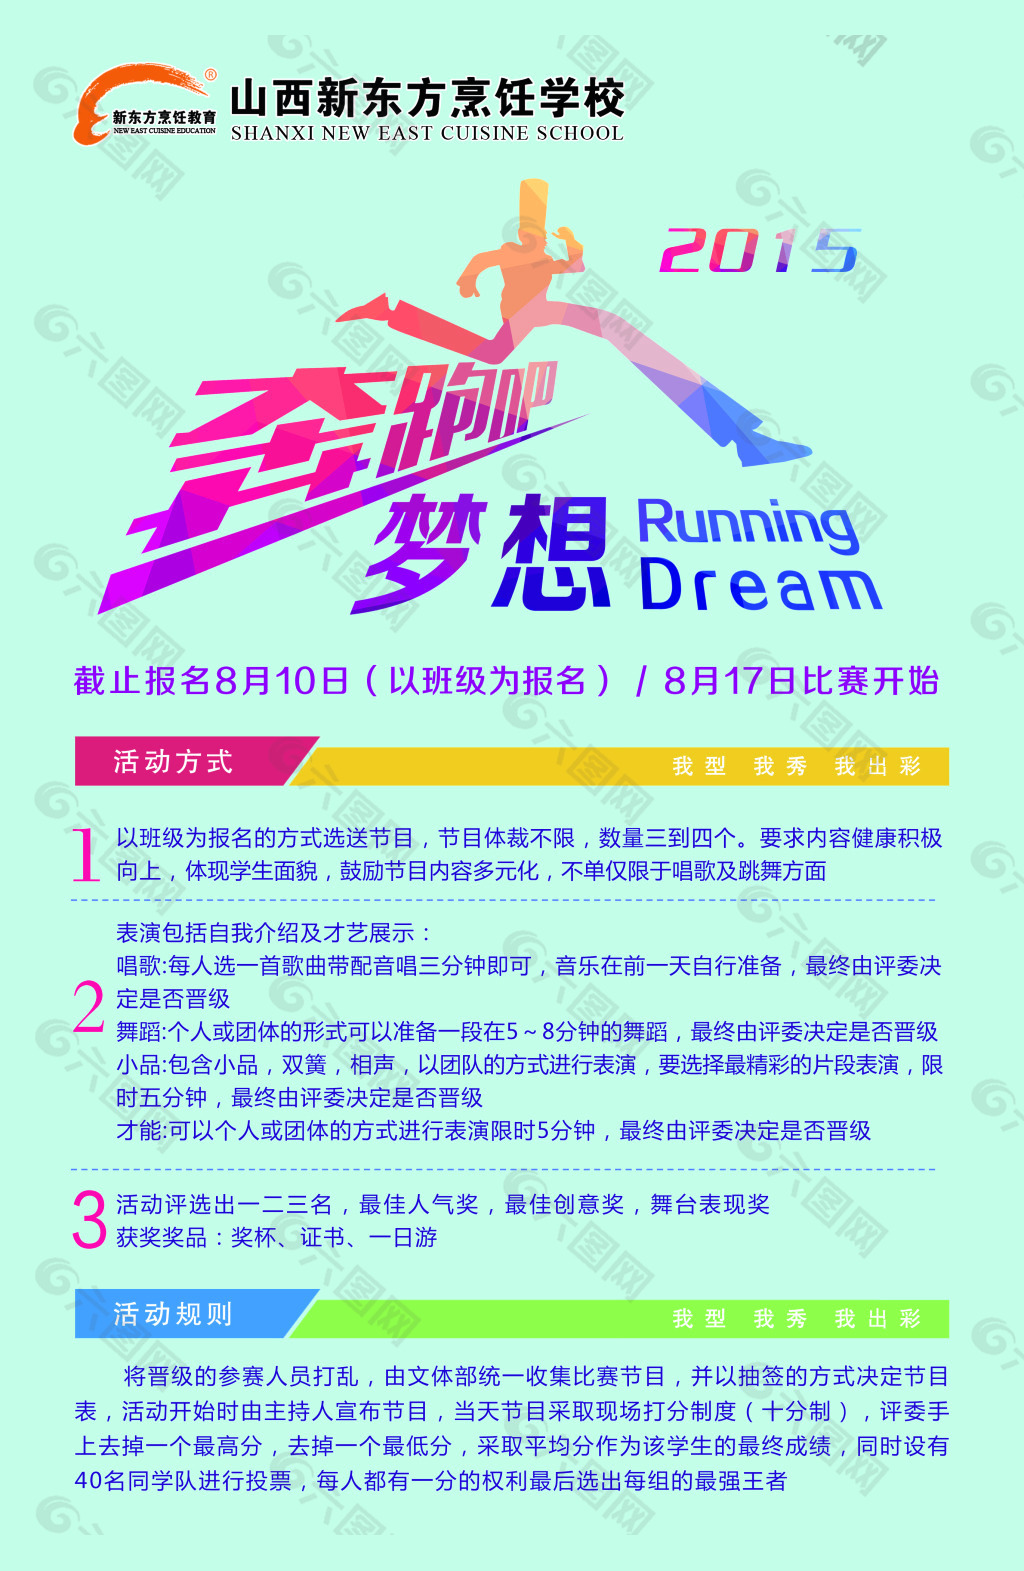 奔跑吧梦想 奔跑2015 奔跑比赛海报